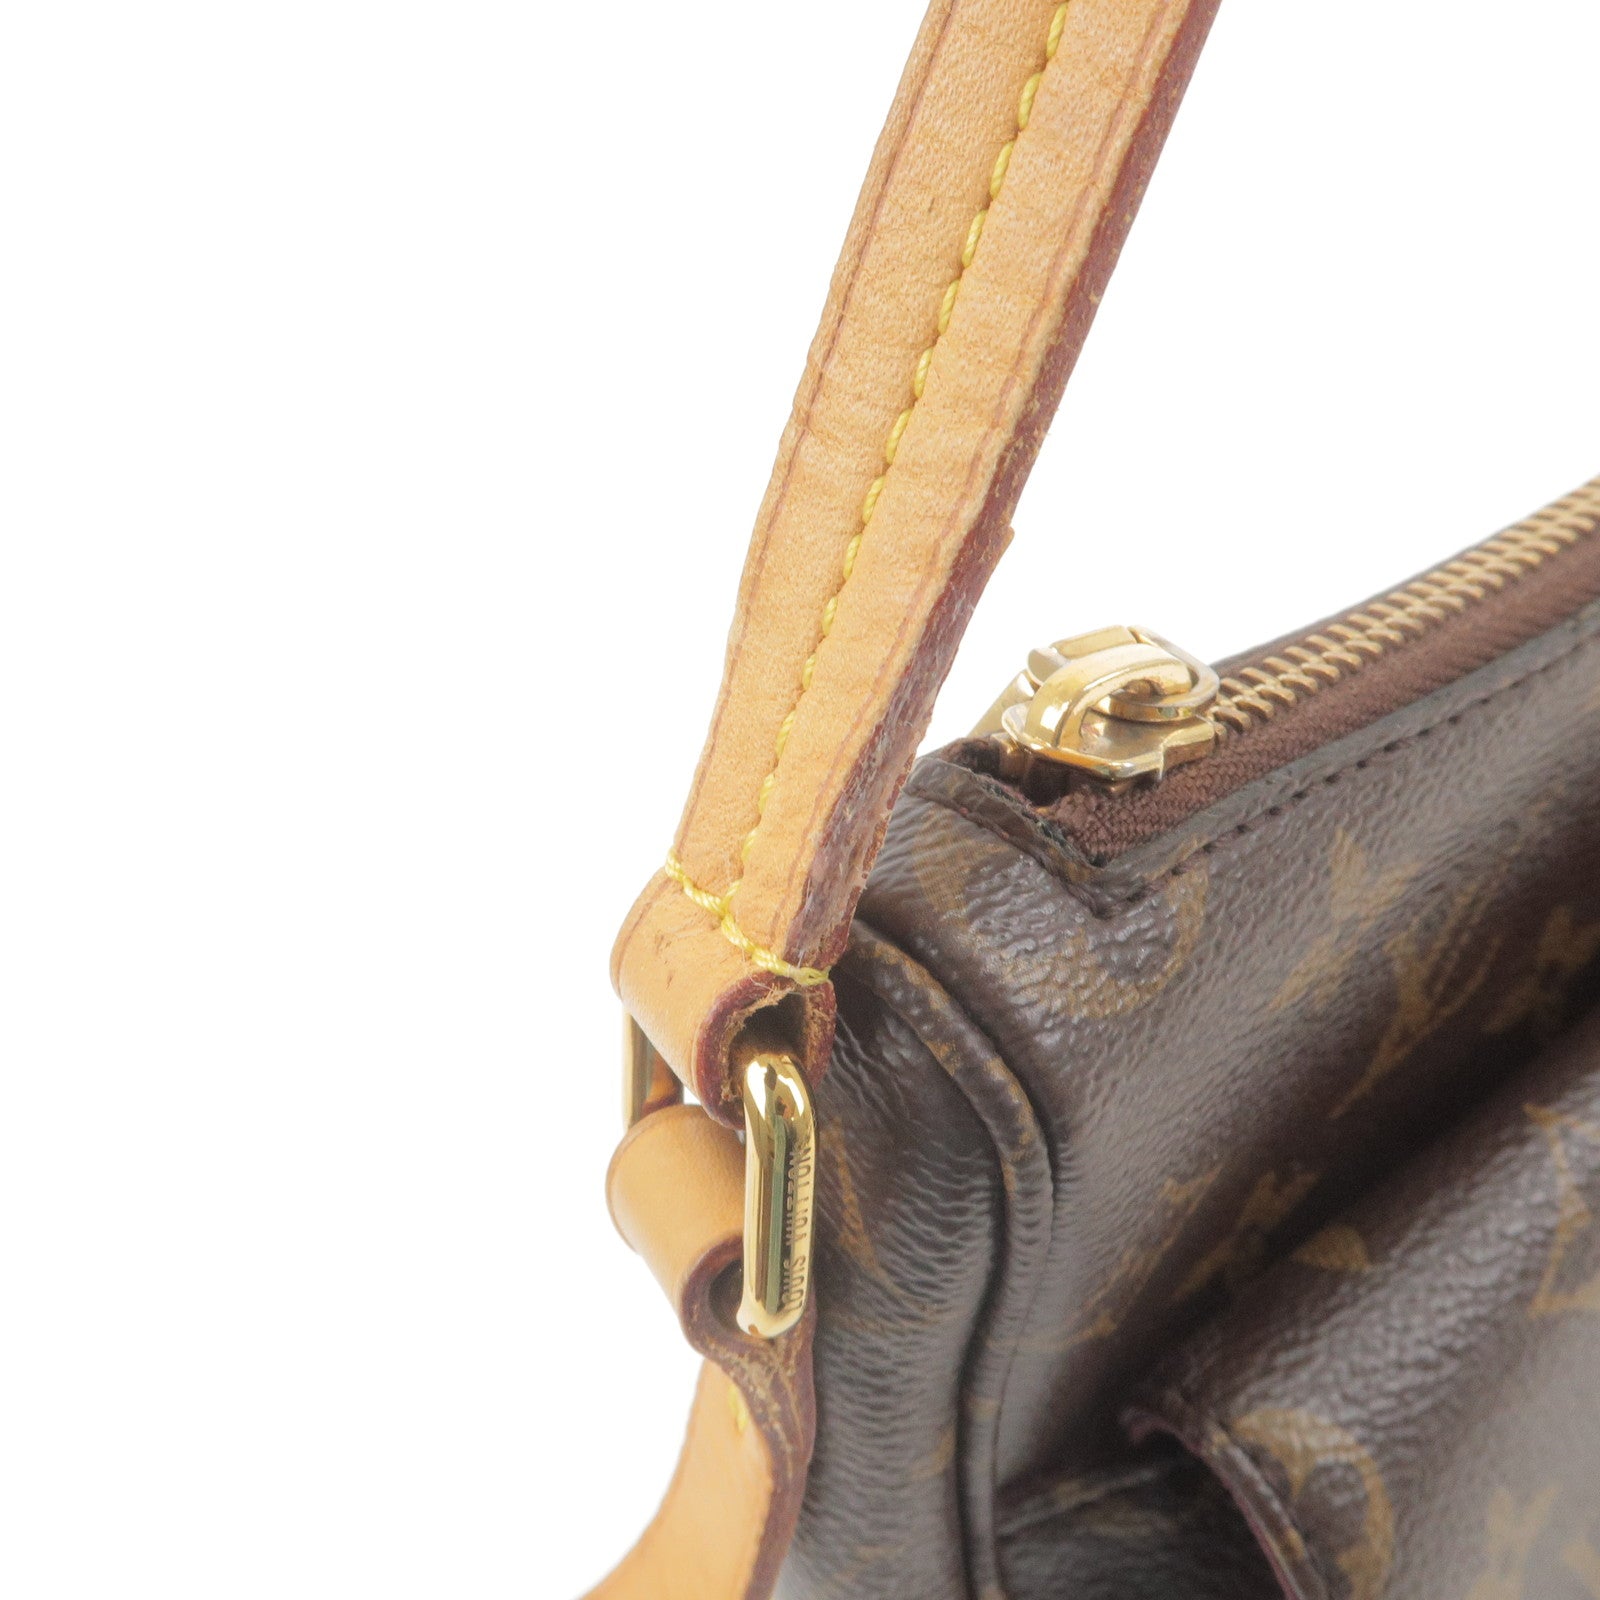 M41679 – dct - Monogram - Mabillon - ep_vintage luxury Store - Shoulder -  Vuitton - Bag - Louis - Louis Vuitton pre-owned Pont Neuf handbag